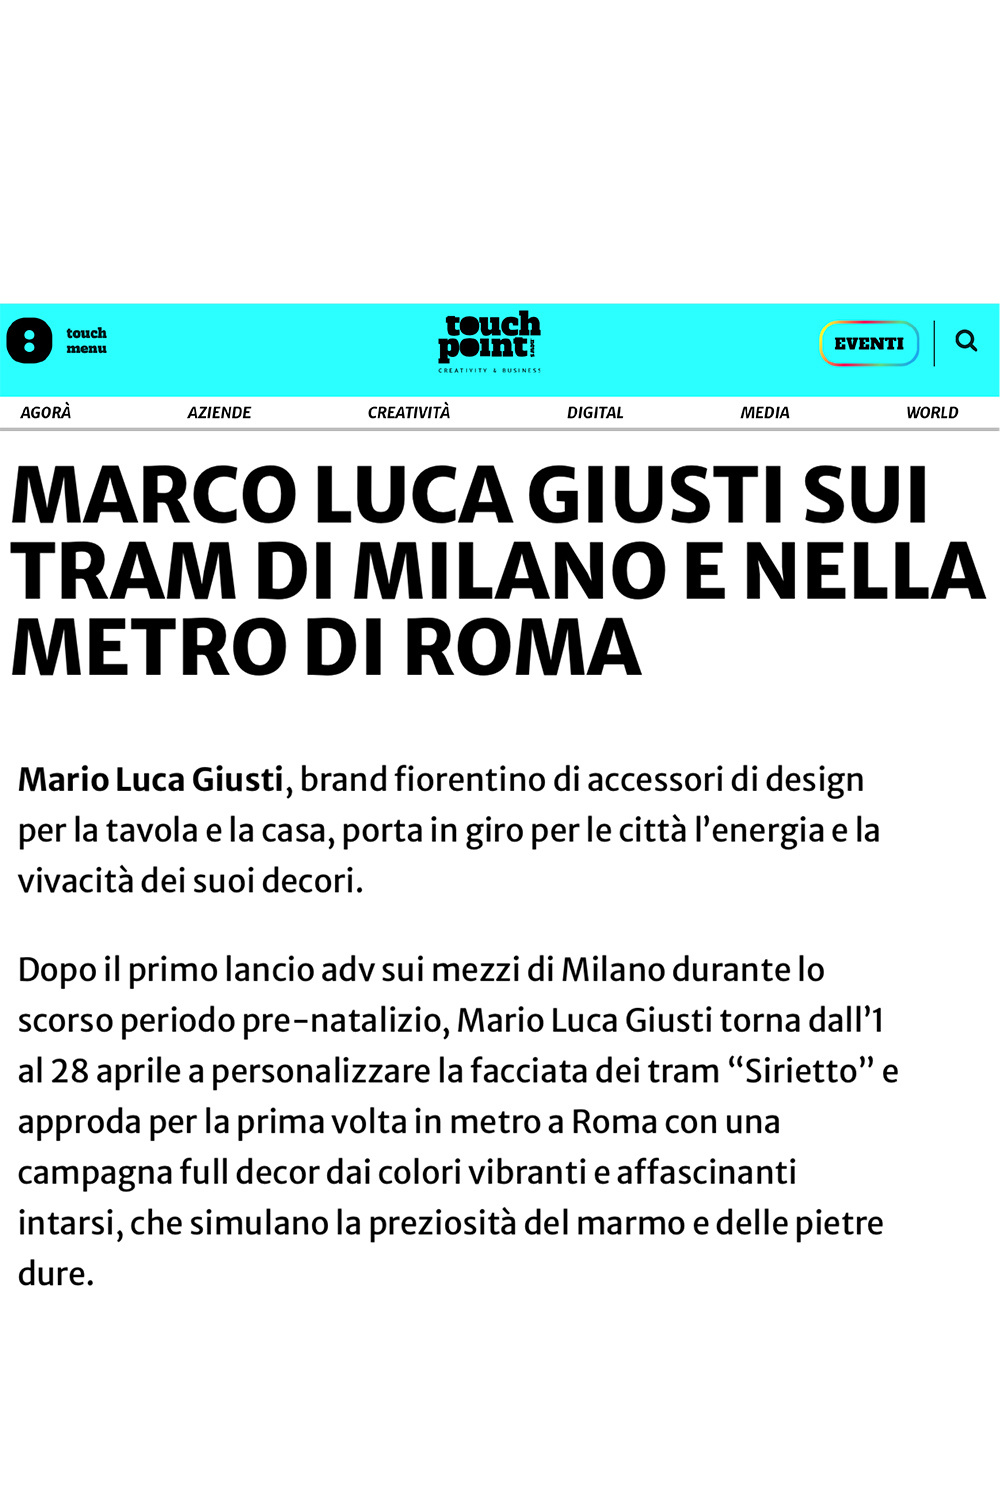 Mario Luca Giusti Sui Tram Di Milano e Nella Metro Di Roma 